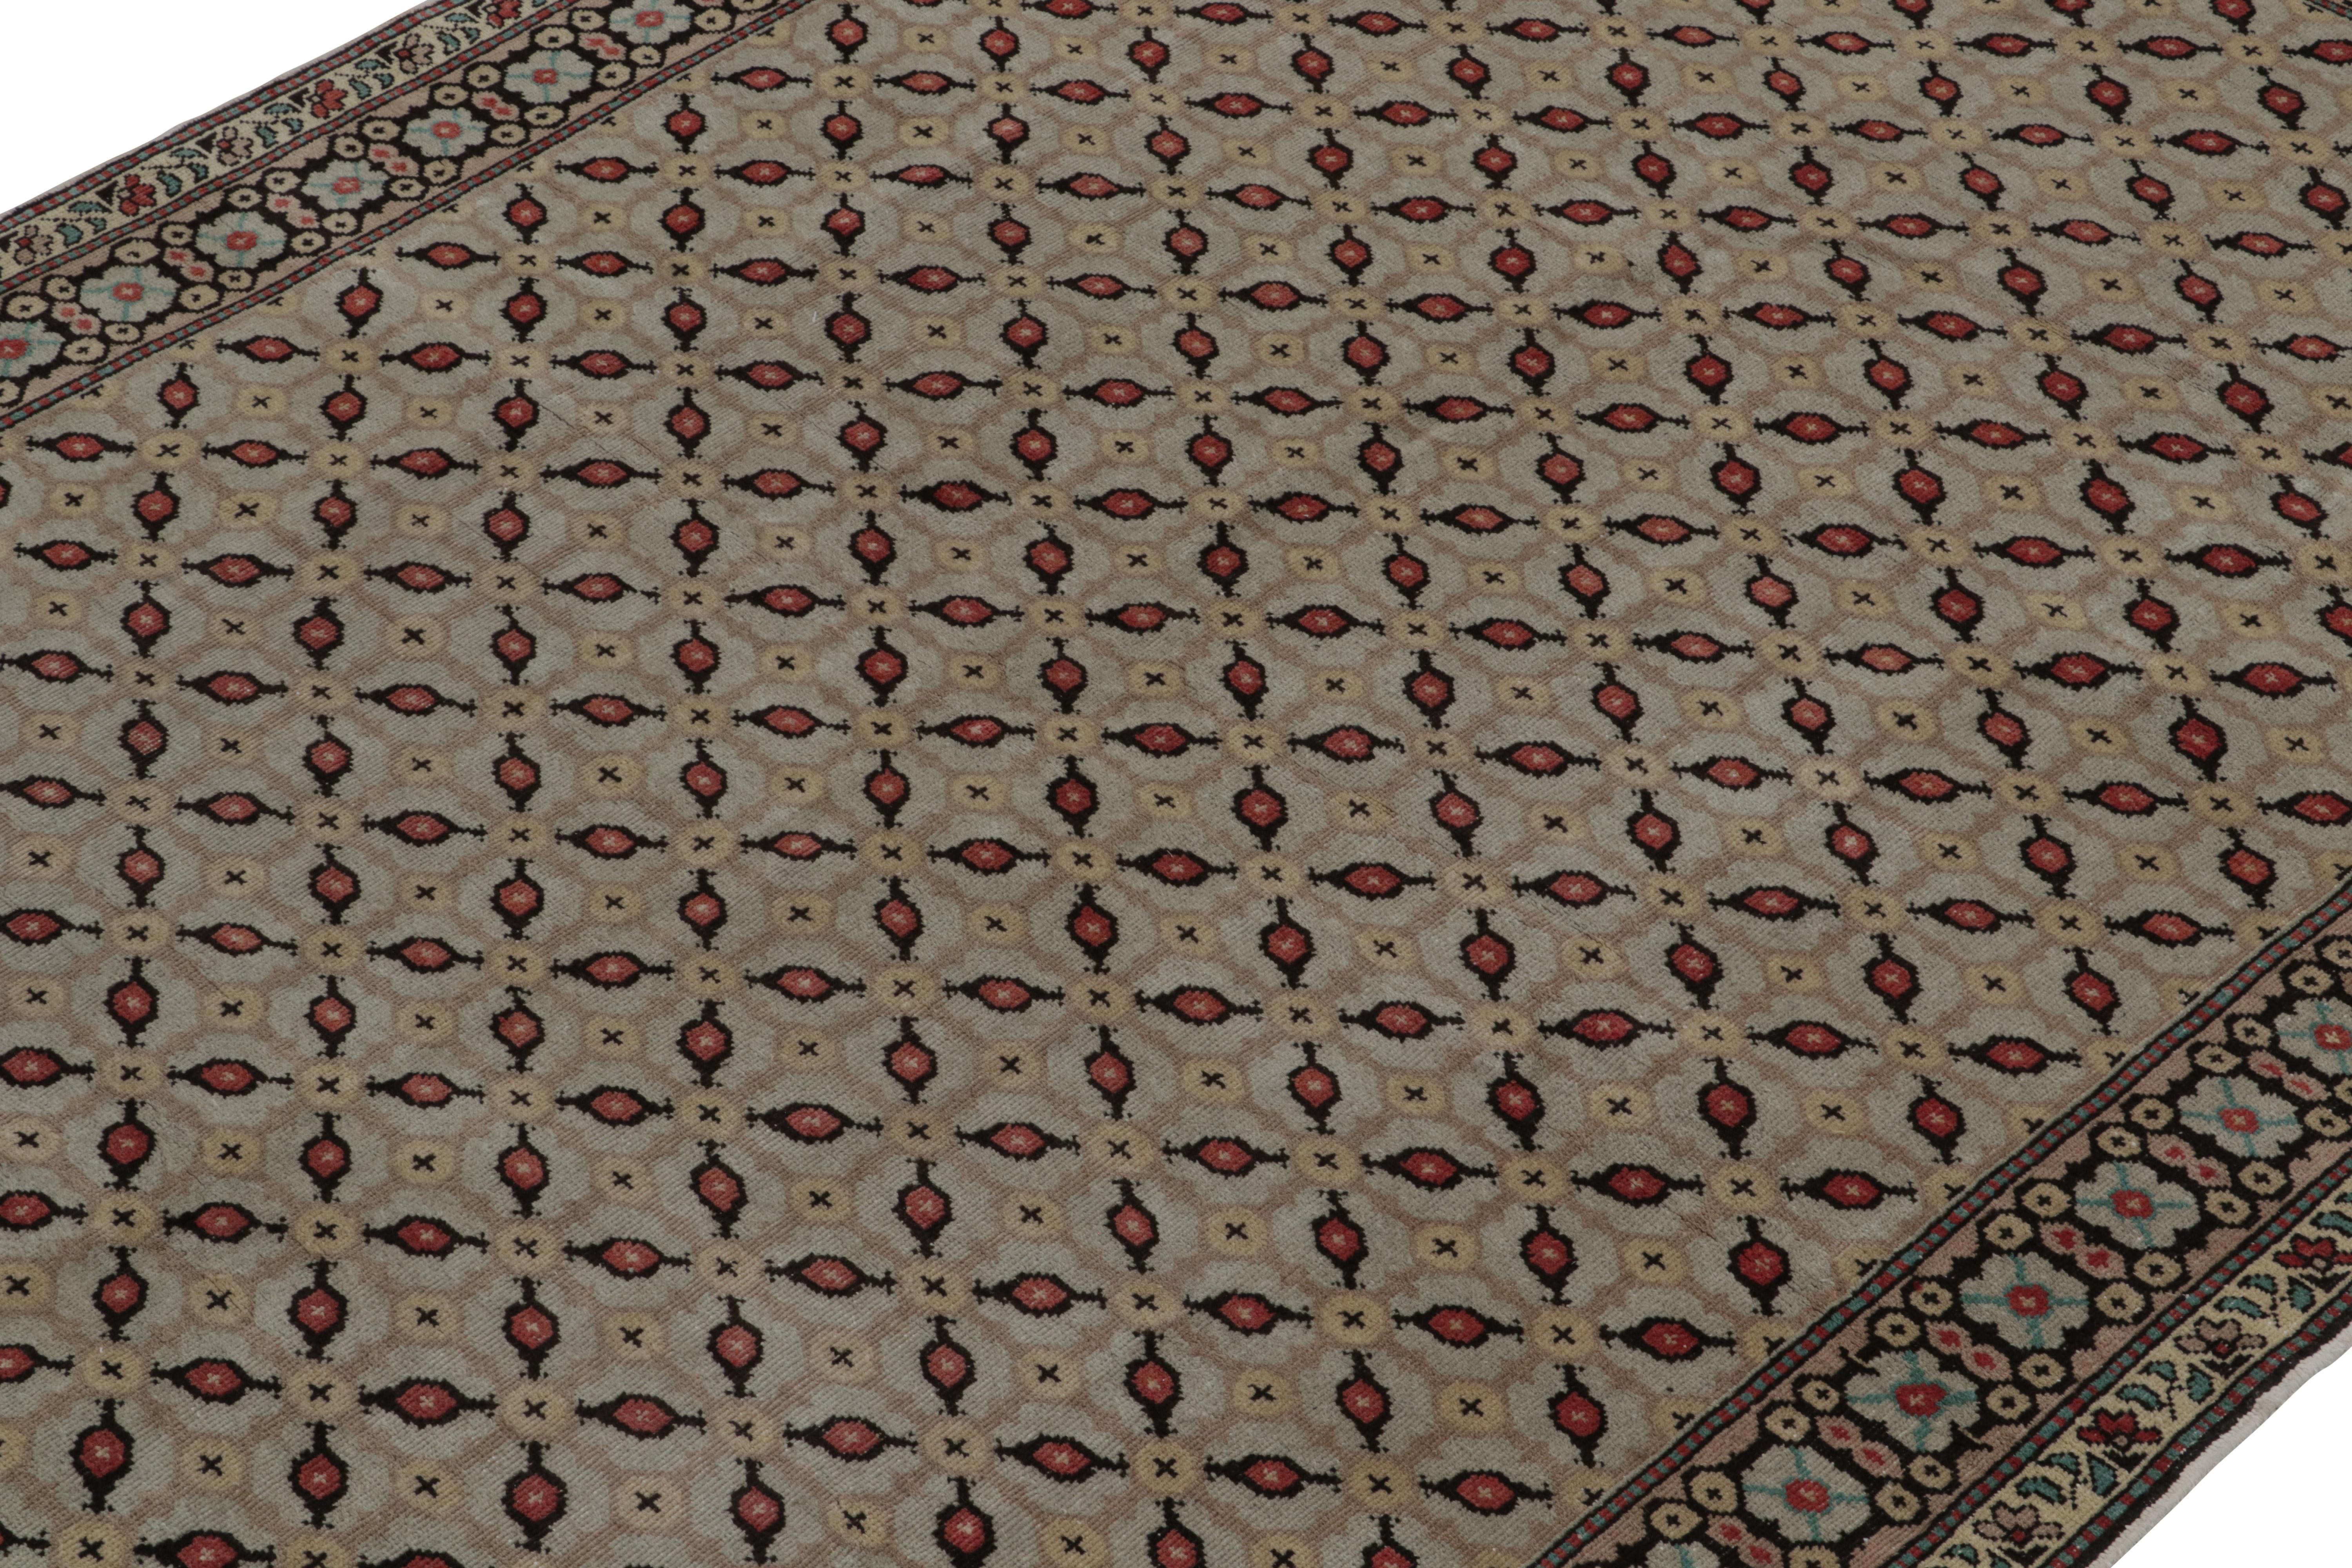 Turkish 1960s Vintage Distressed Rug in Beige-Brown Geometric Pattern by Rug & Kilim For Sale